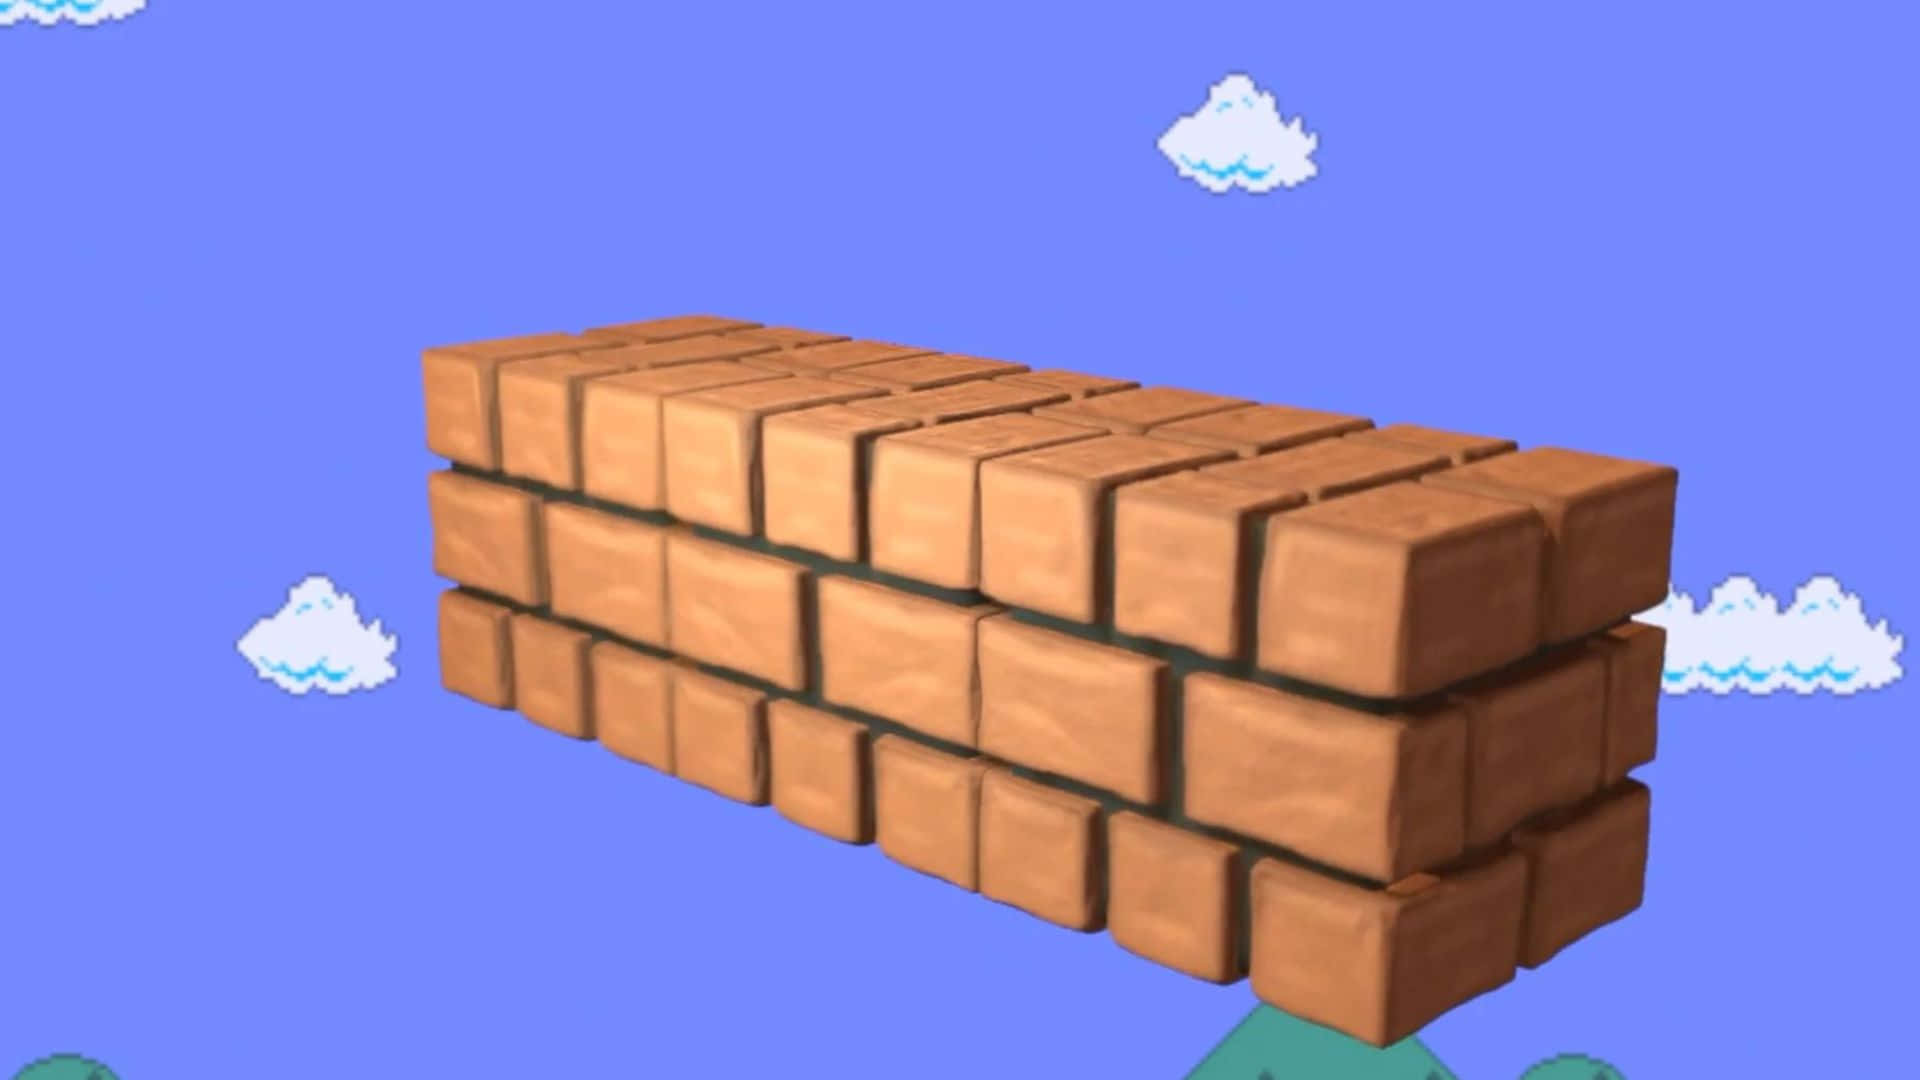 Super Mario Bros smashing a brick in classic game scene Wallpaper